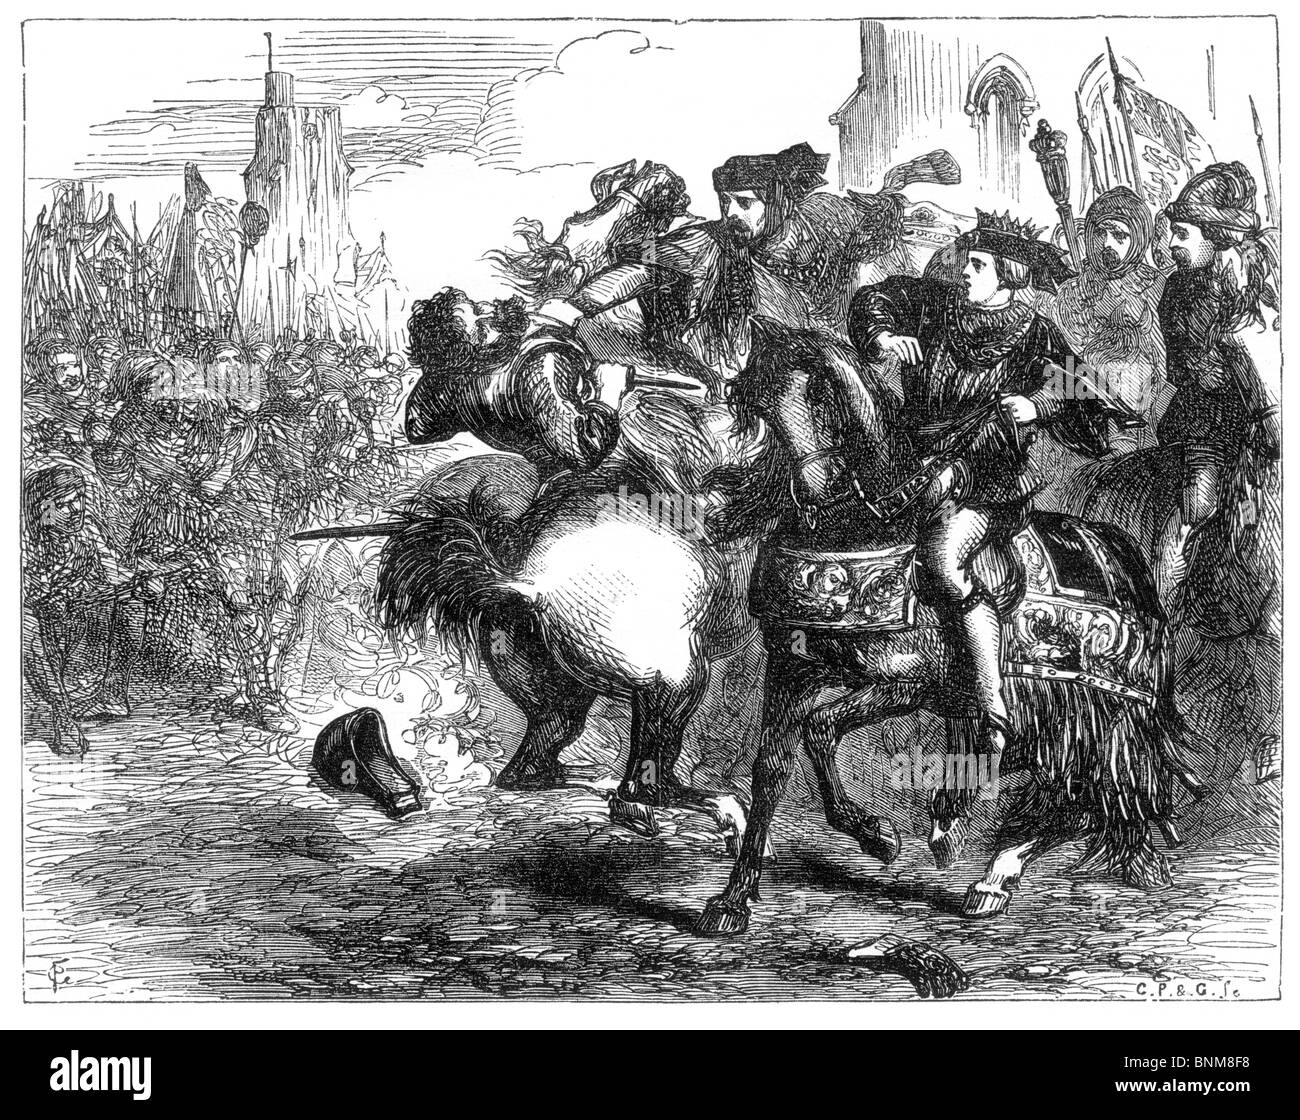 Illustration noir et blanc de la mort de Wat Tyler, révolte des paysans, 15 juin 1381 Banque D'Images